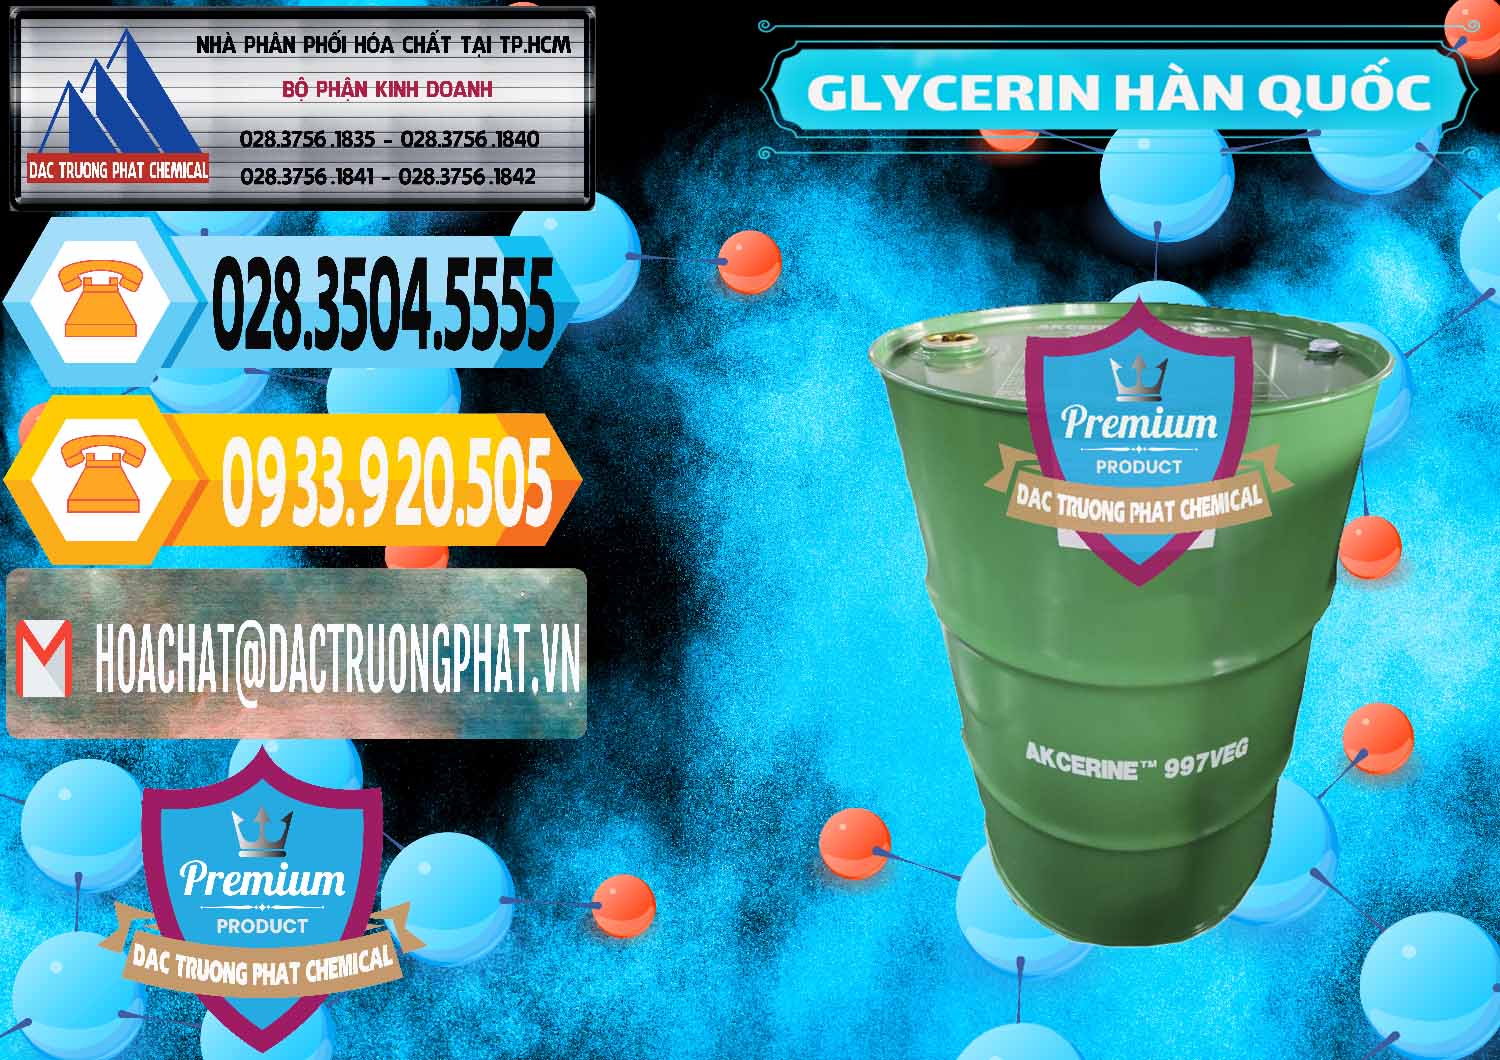 Đơn vị chuyên cung ứng và bán Glycerin – C3H8O3 Hàn Quốc Korea - 0403 - Đơn vị chuyên bán và cung cấp hóa chất tại TP.HCM - hoachattayrua.net